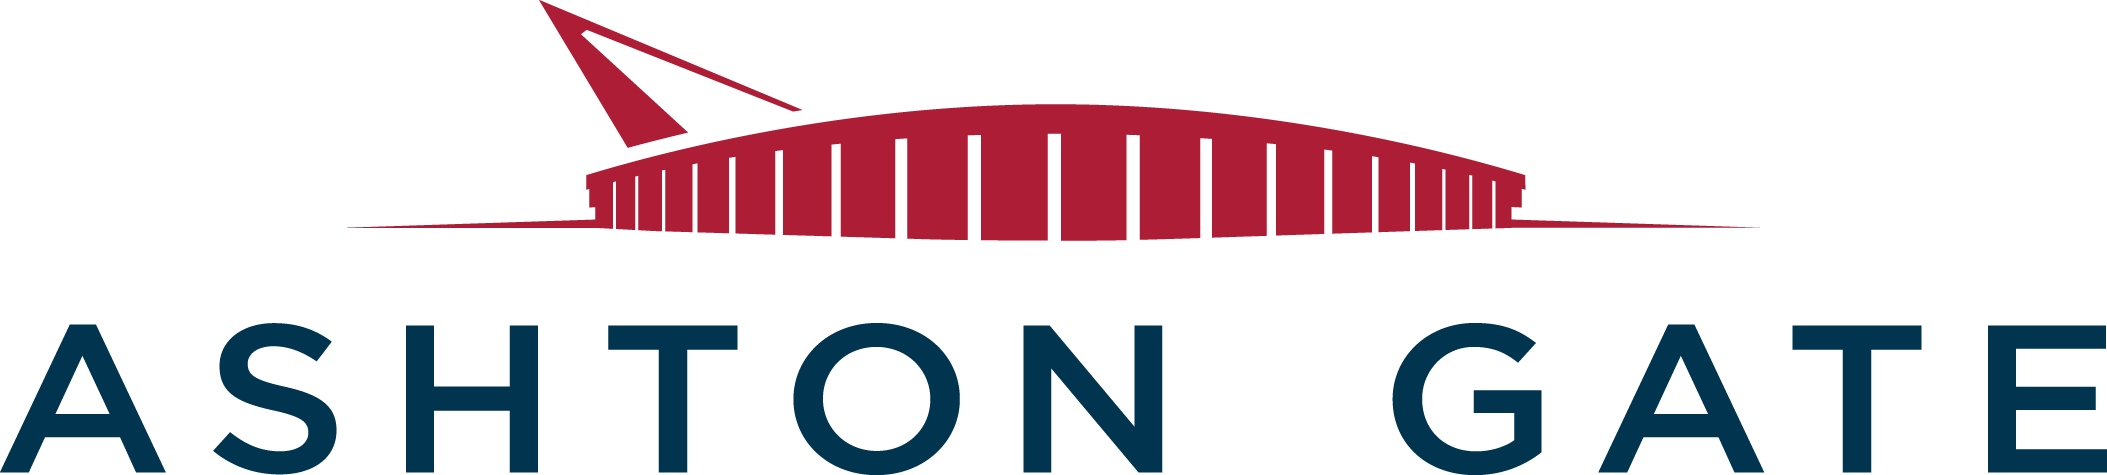 Ashton Gate Stadium logo